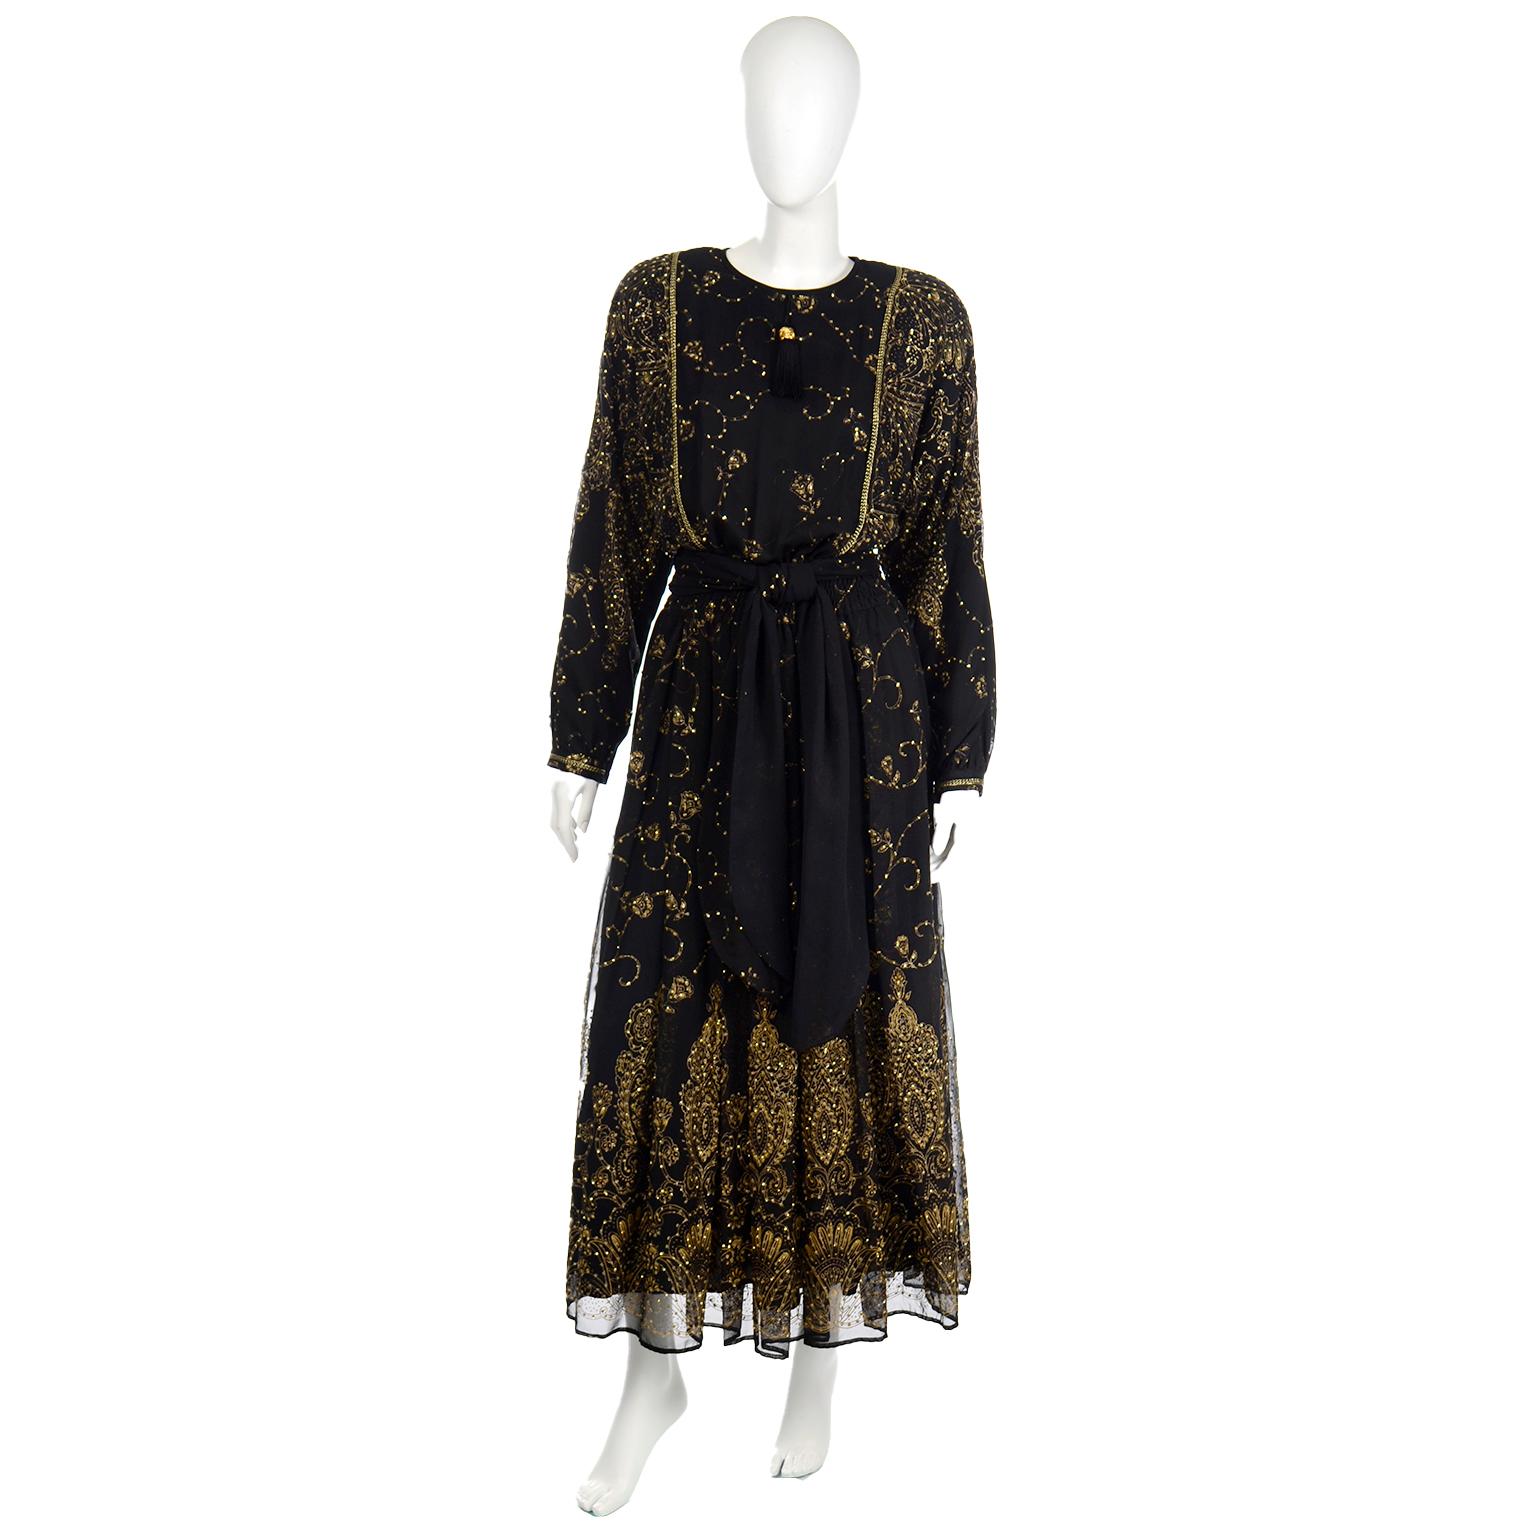 Dies ist eine atemberaubende, sehr einzigartig Diane Freis Original schiere schwarz und gold glänzenden Abendkleid mit einer passenden Schärpe Stil Schal. Wir haben dieses Abendkleid von einer Frau erworben, die die ungewöhnlichsten Diane